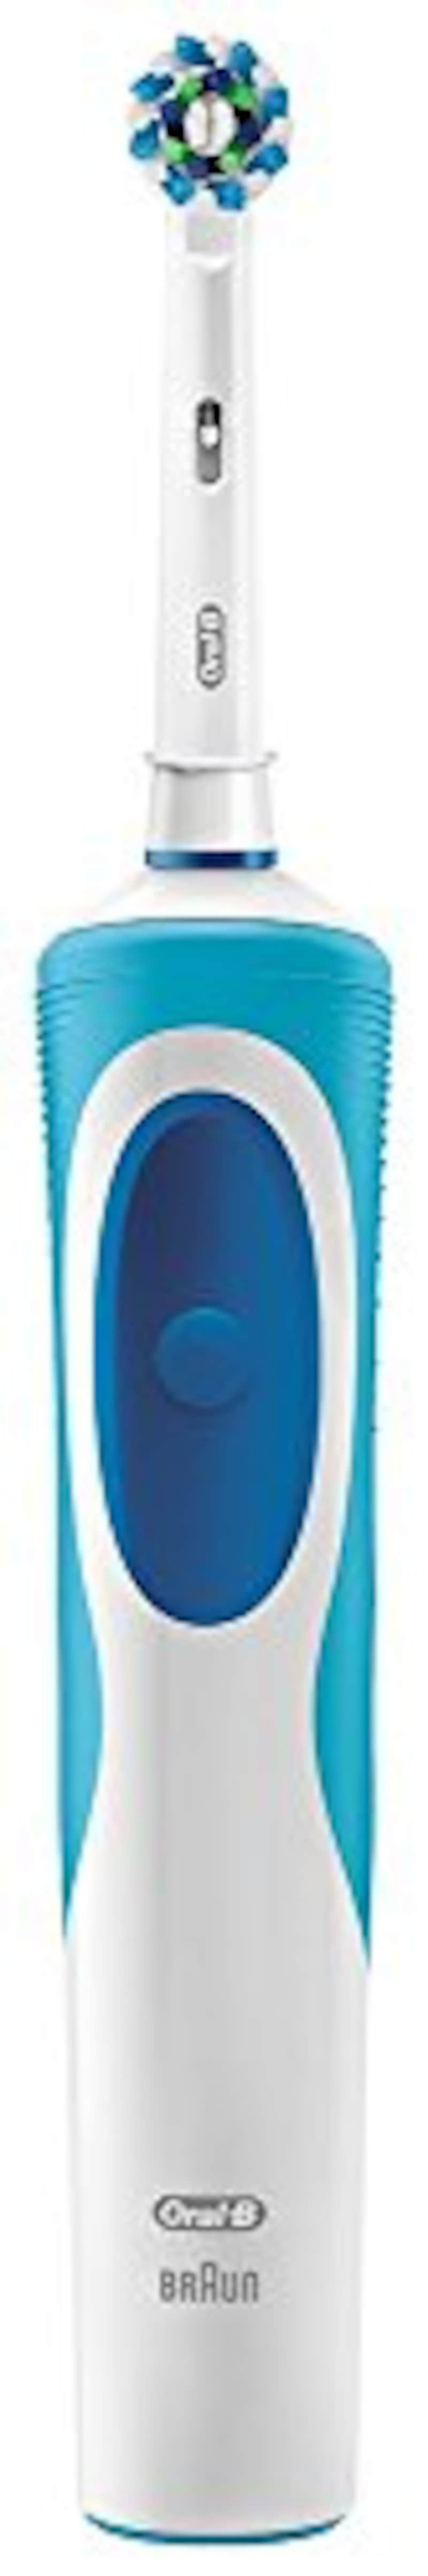 ブラウン,オーラルB 電動歯ブラシ すみずみクリーンEX 1モードタイプ,D12013AE